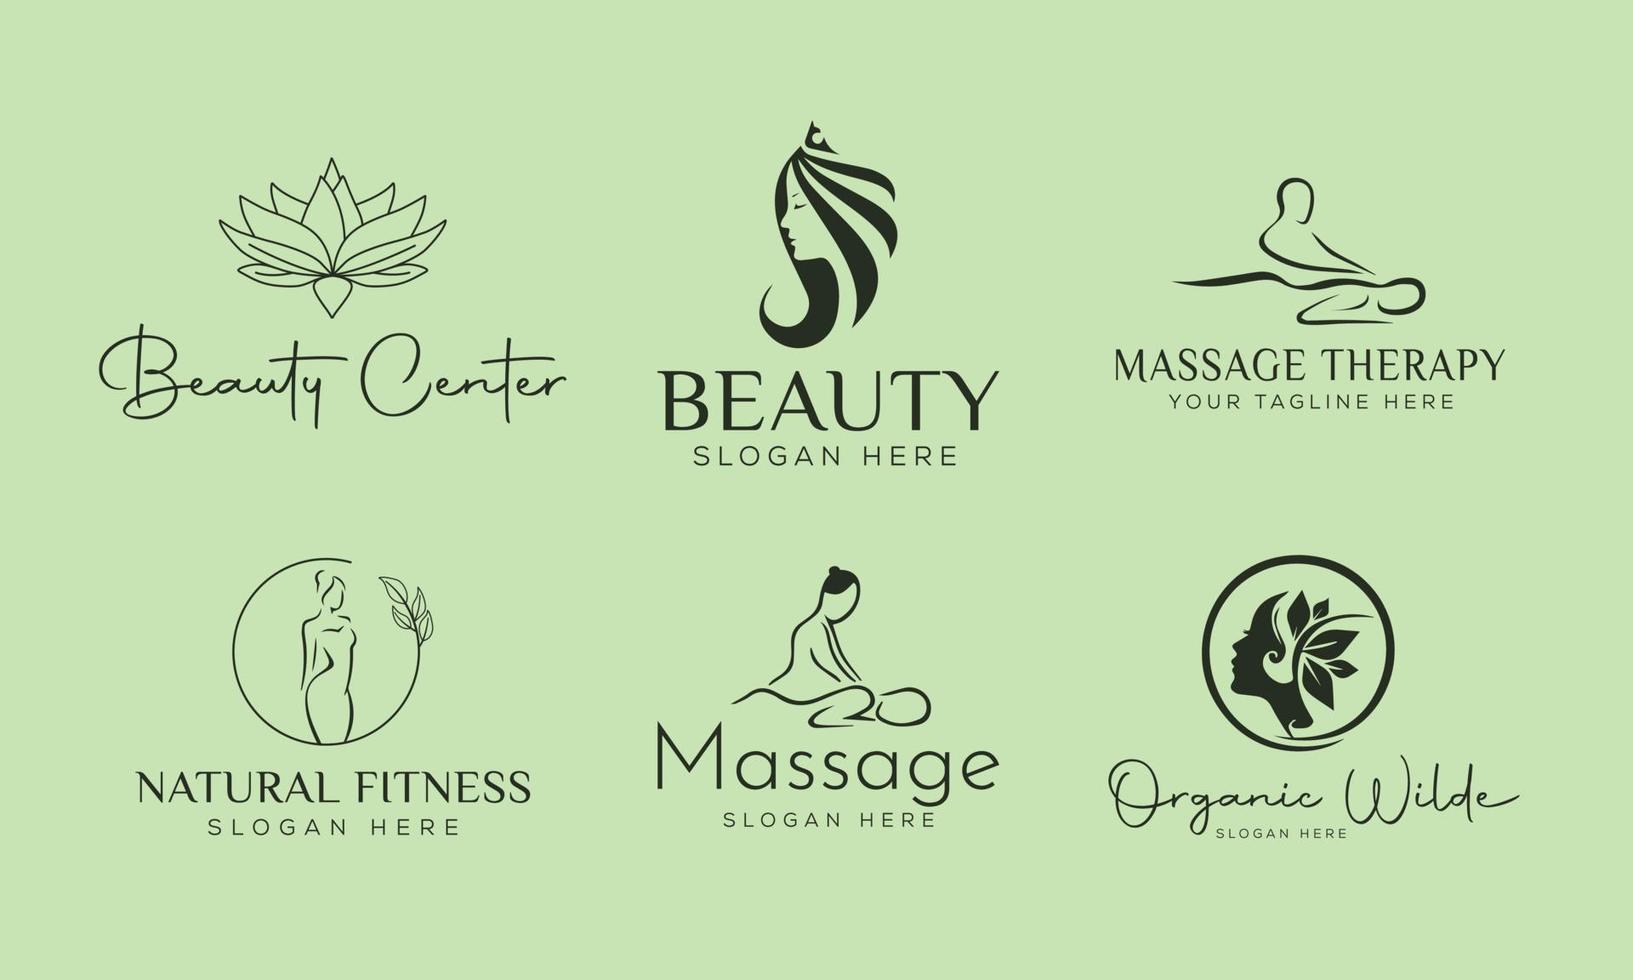 conjunto de logotipo desenhado à mão do elemento spa com corpo e folhas. logotipo para spa e salão de beleza, boutique, massagem terapêutica, loja orgânica, relaxamento, corpo feminino, ioga, loja de cosméticos. vetor livre